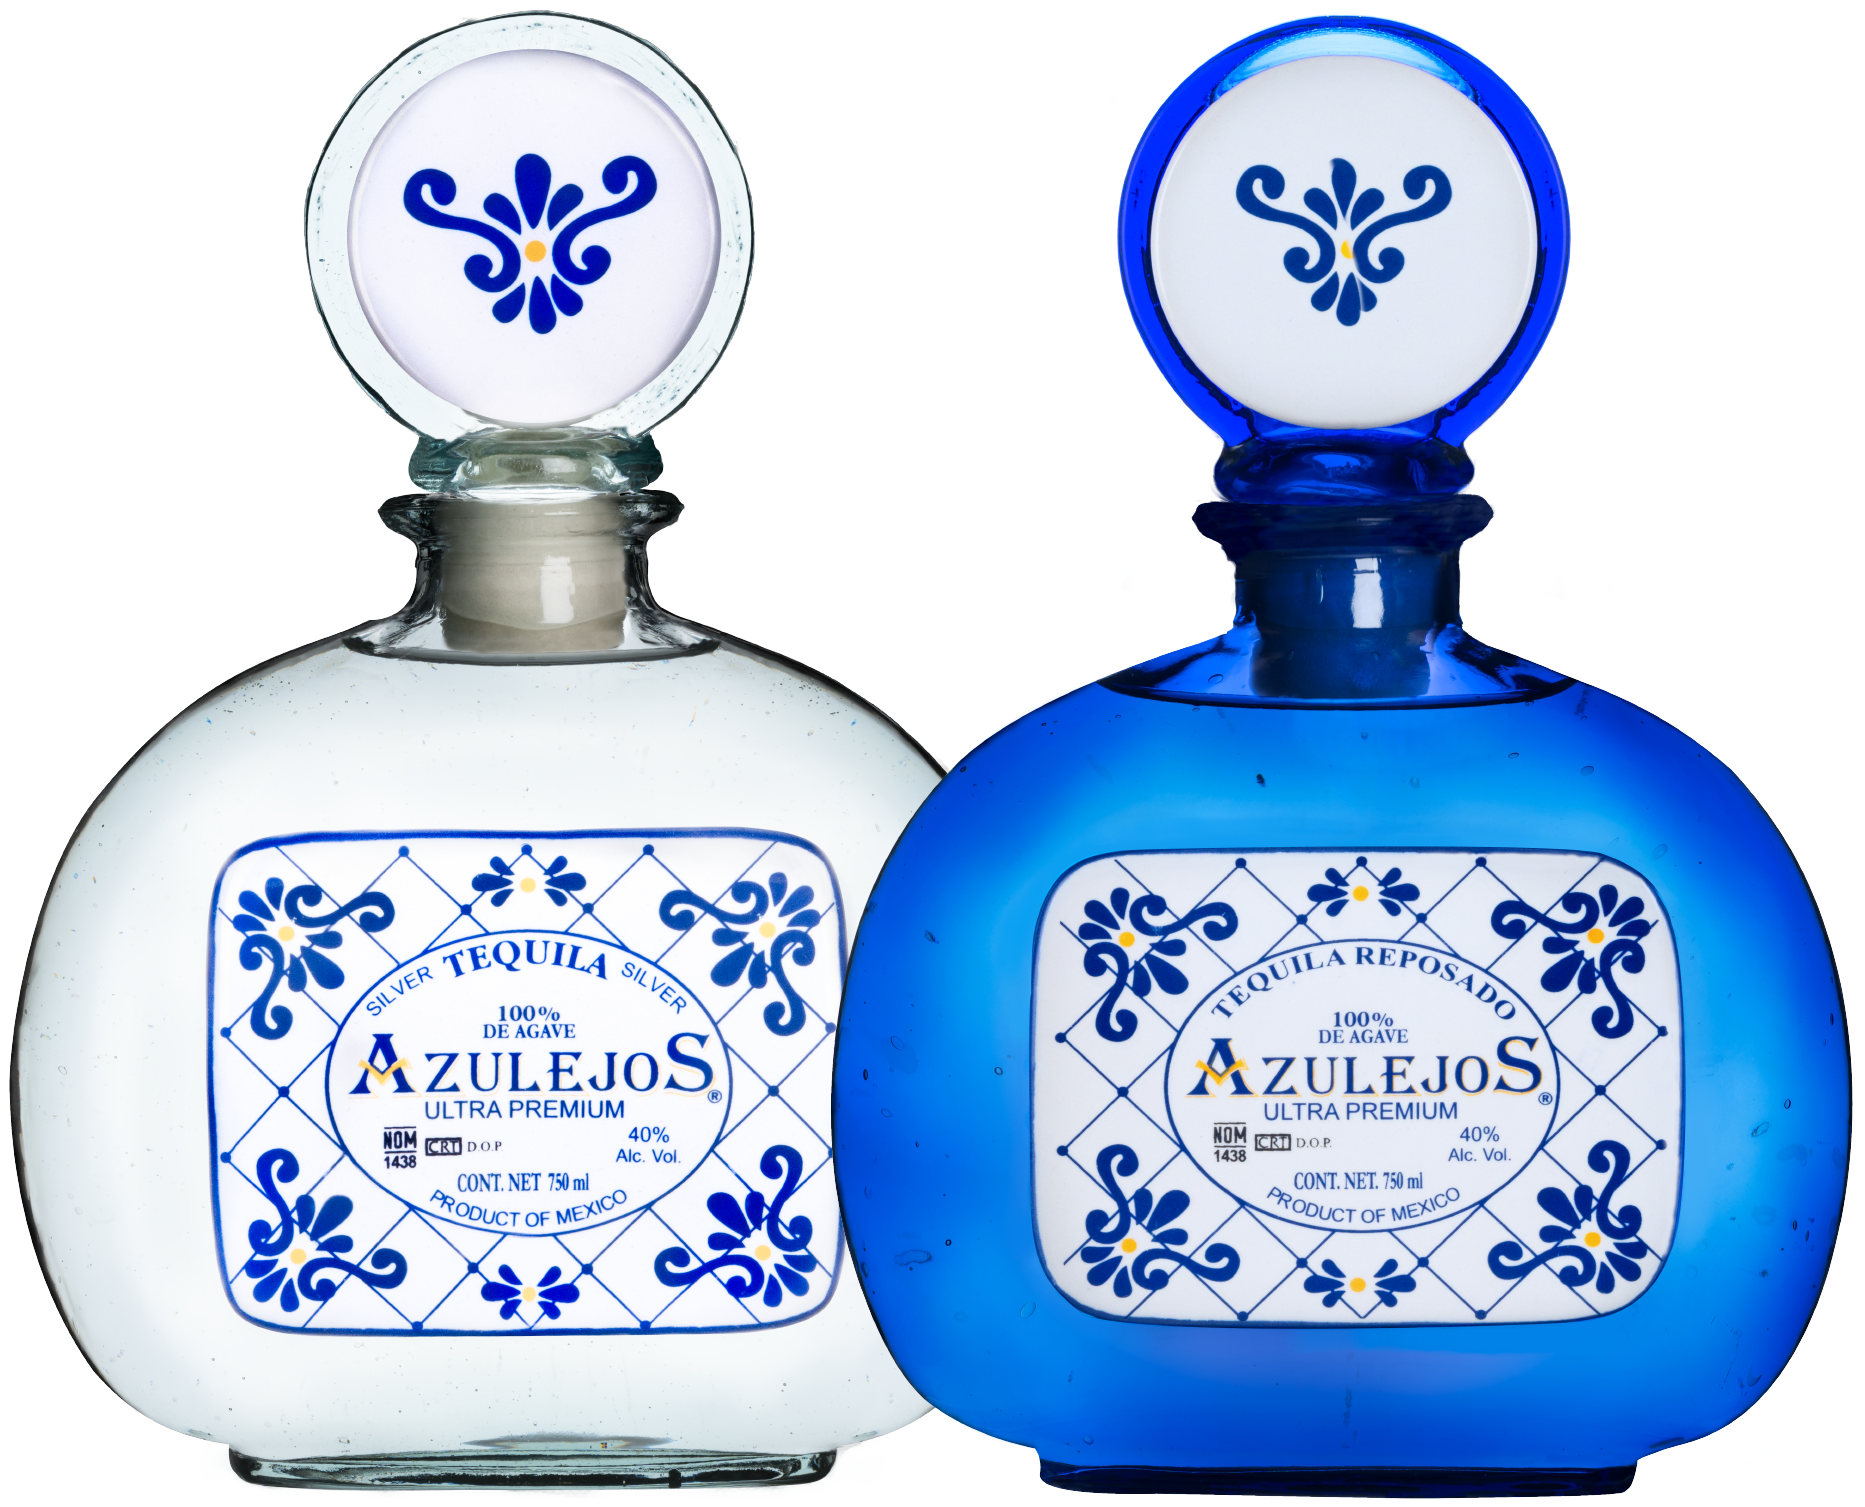 Azulejos Blanco & Reposado Classic Collection Bottles